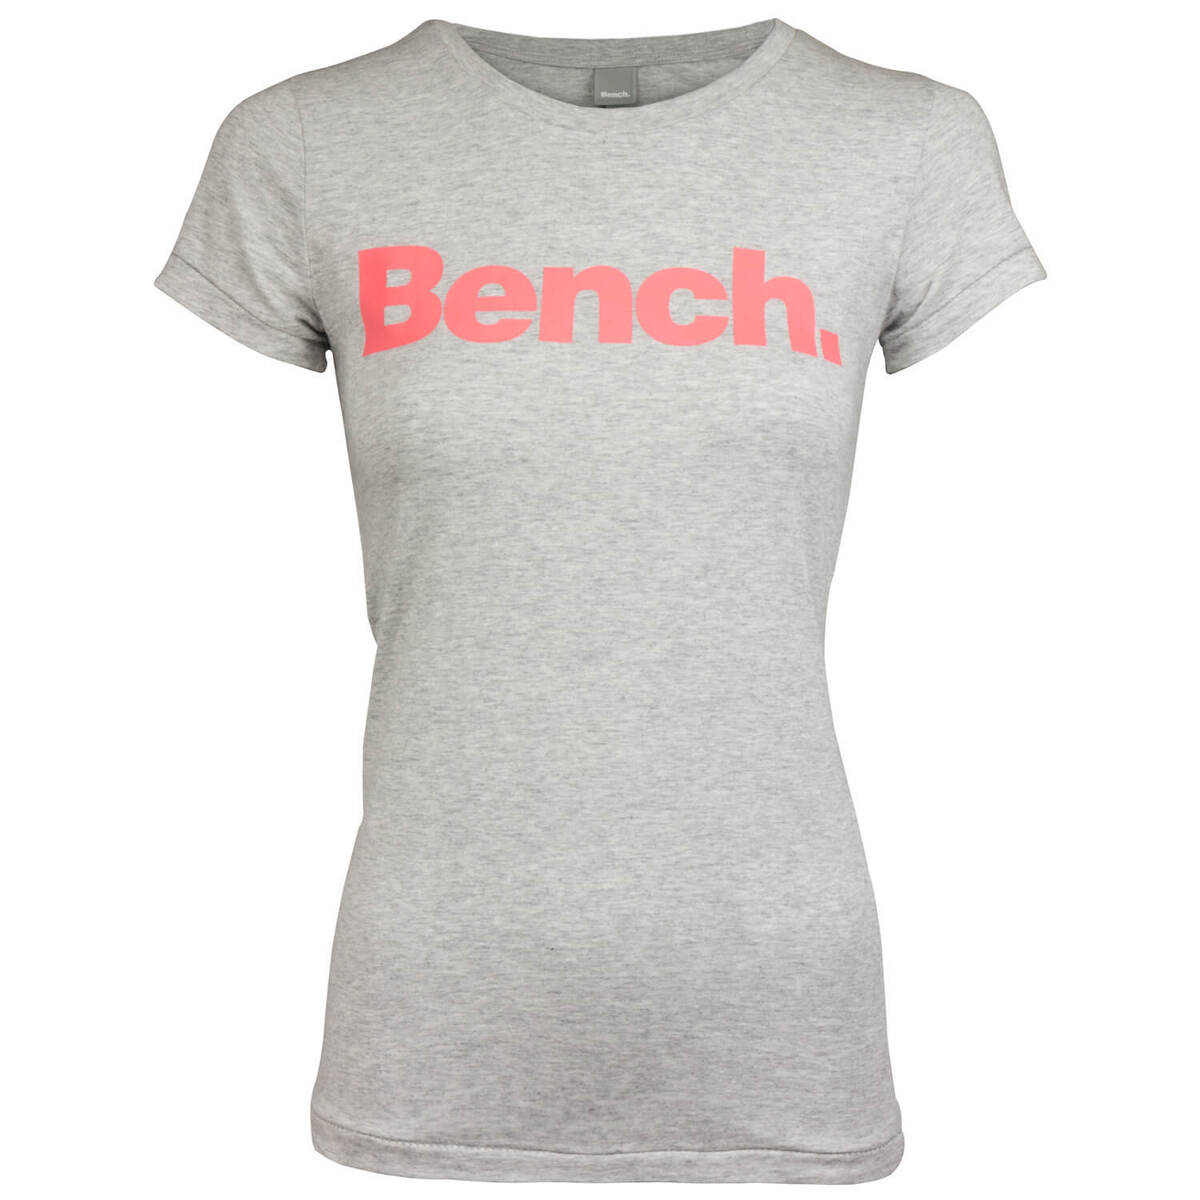 Bench. Damen T-Shirt Shirt Top Label Print Rundhals-Ausschnitt Basic  tailliert | eBay